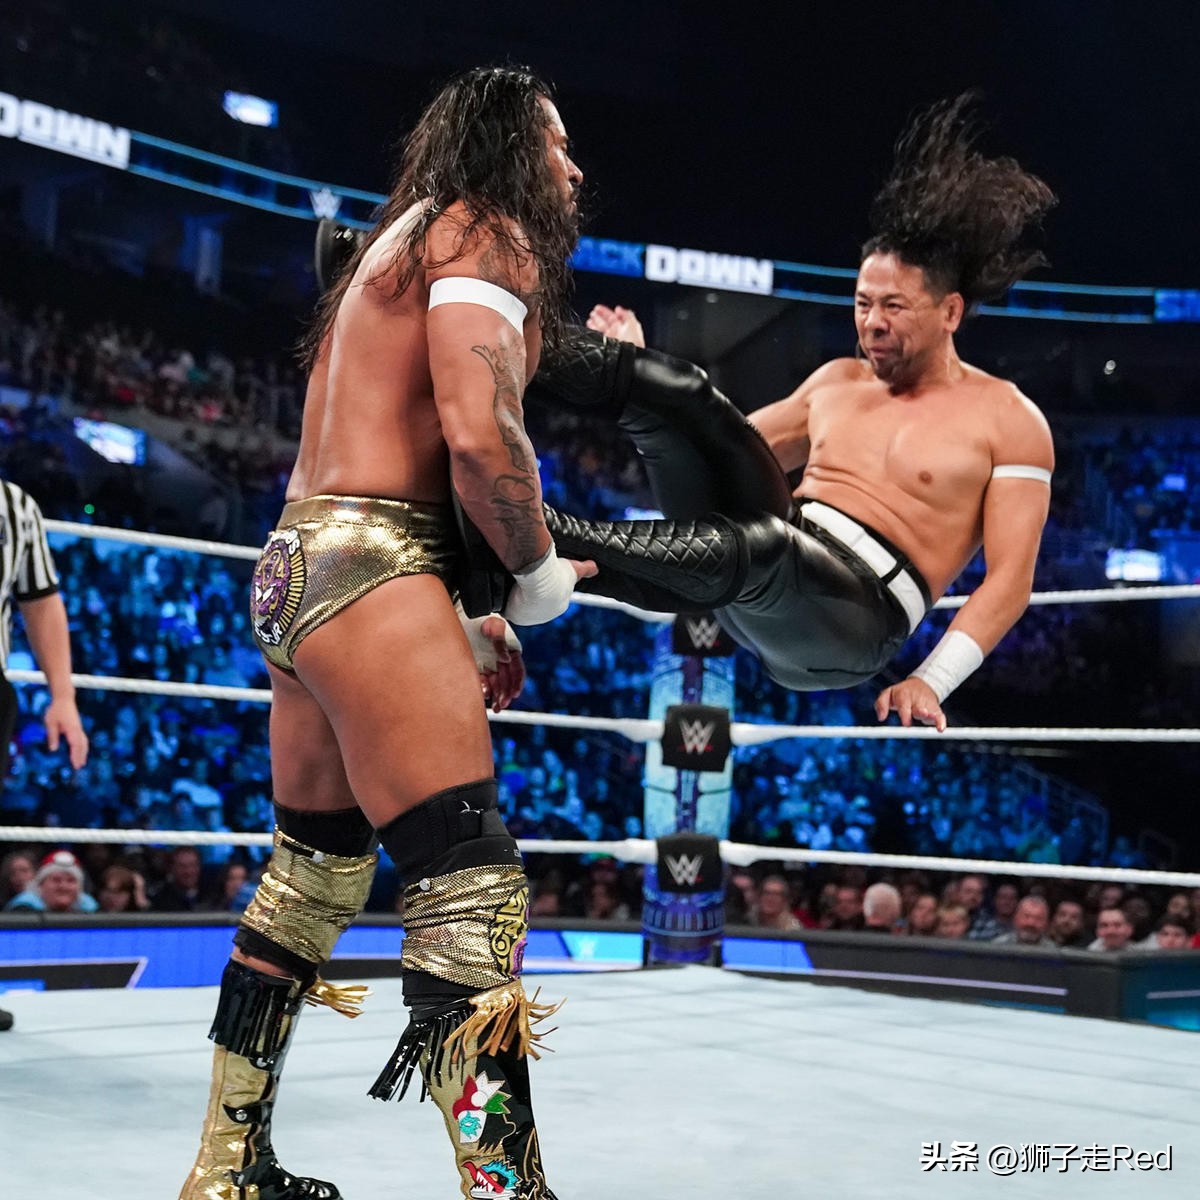 小狮子和克罗斯因伤缺席(WWE第1210期Smackdown节目2022年10月28日赛况及精选照片集)